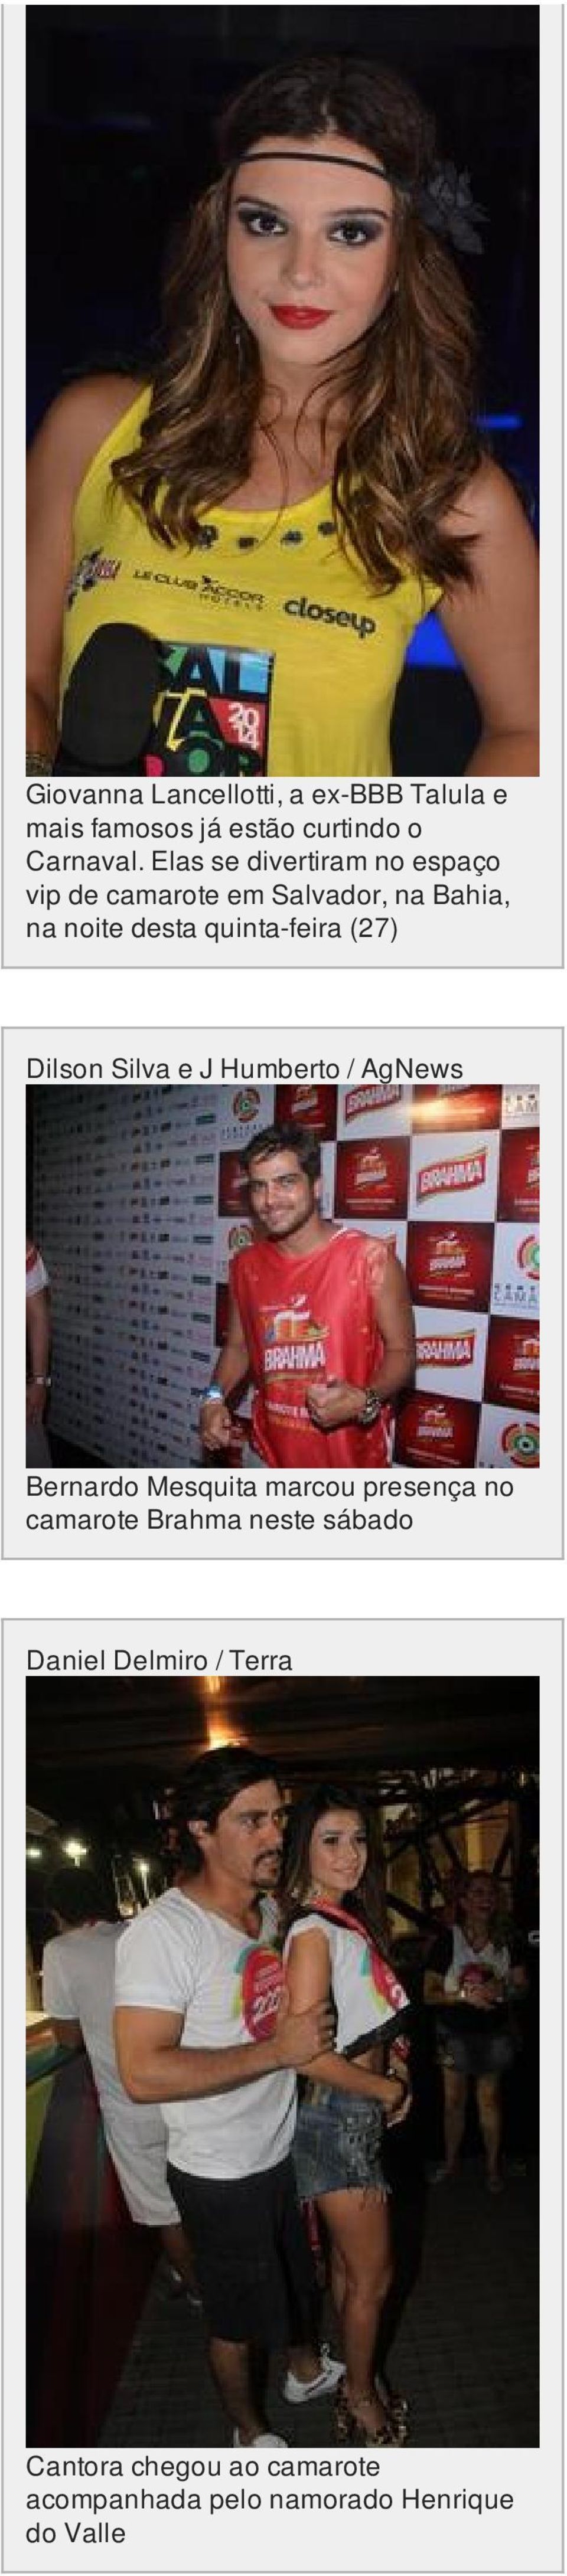 quinta-feira (27) Dilson Silva e J Humberto / AgNews Bernardo Mesquita marcou presença no